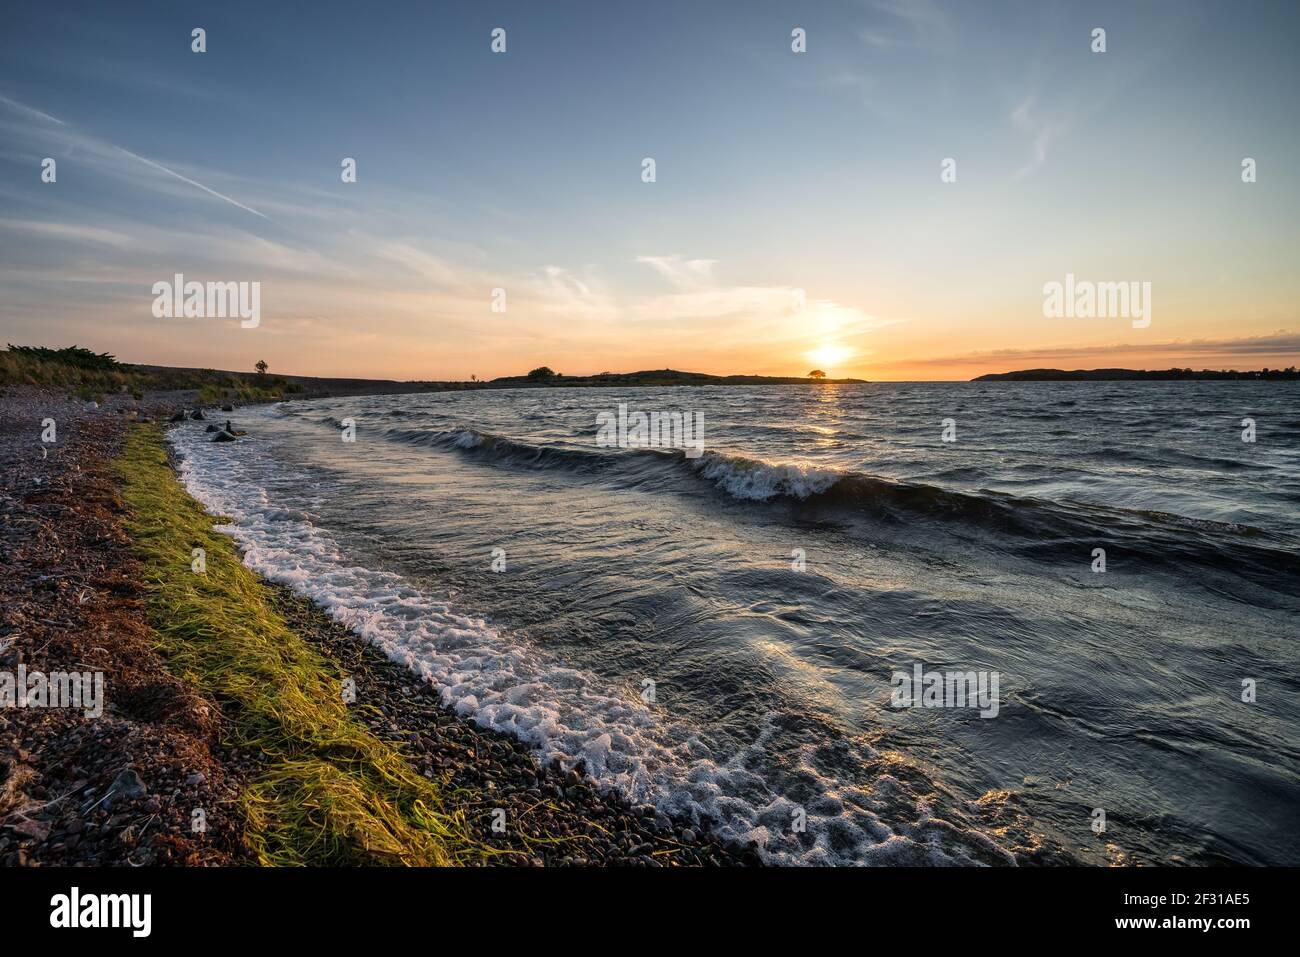 Sunset at Jurmo island, Parainen, Finland Stock Photo